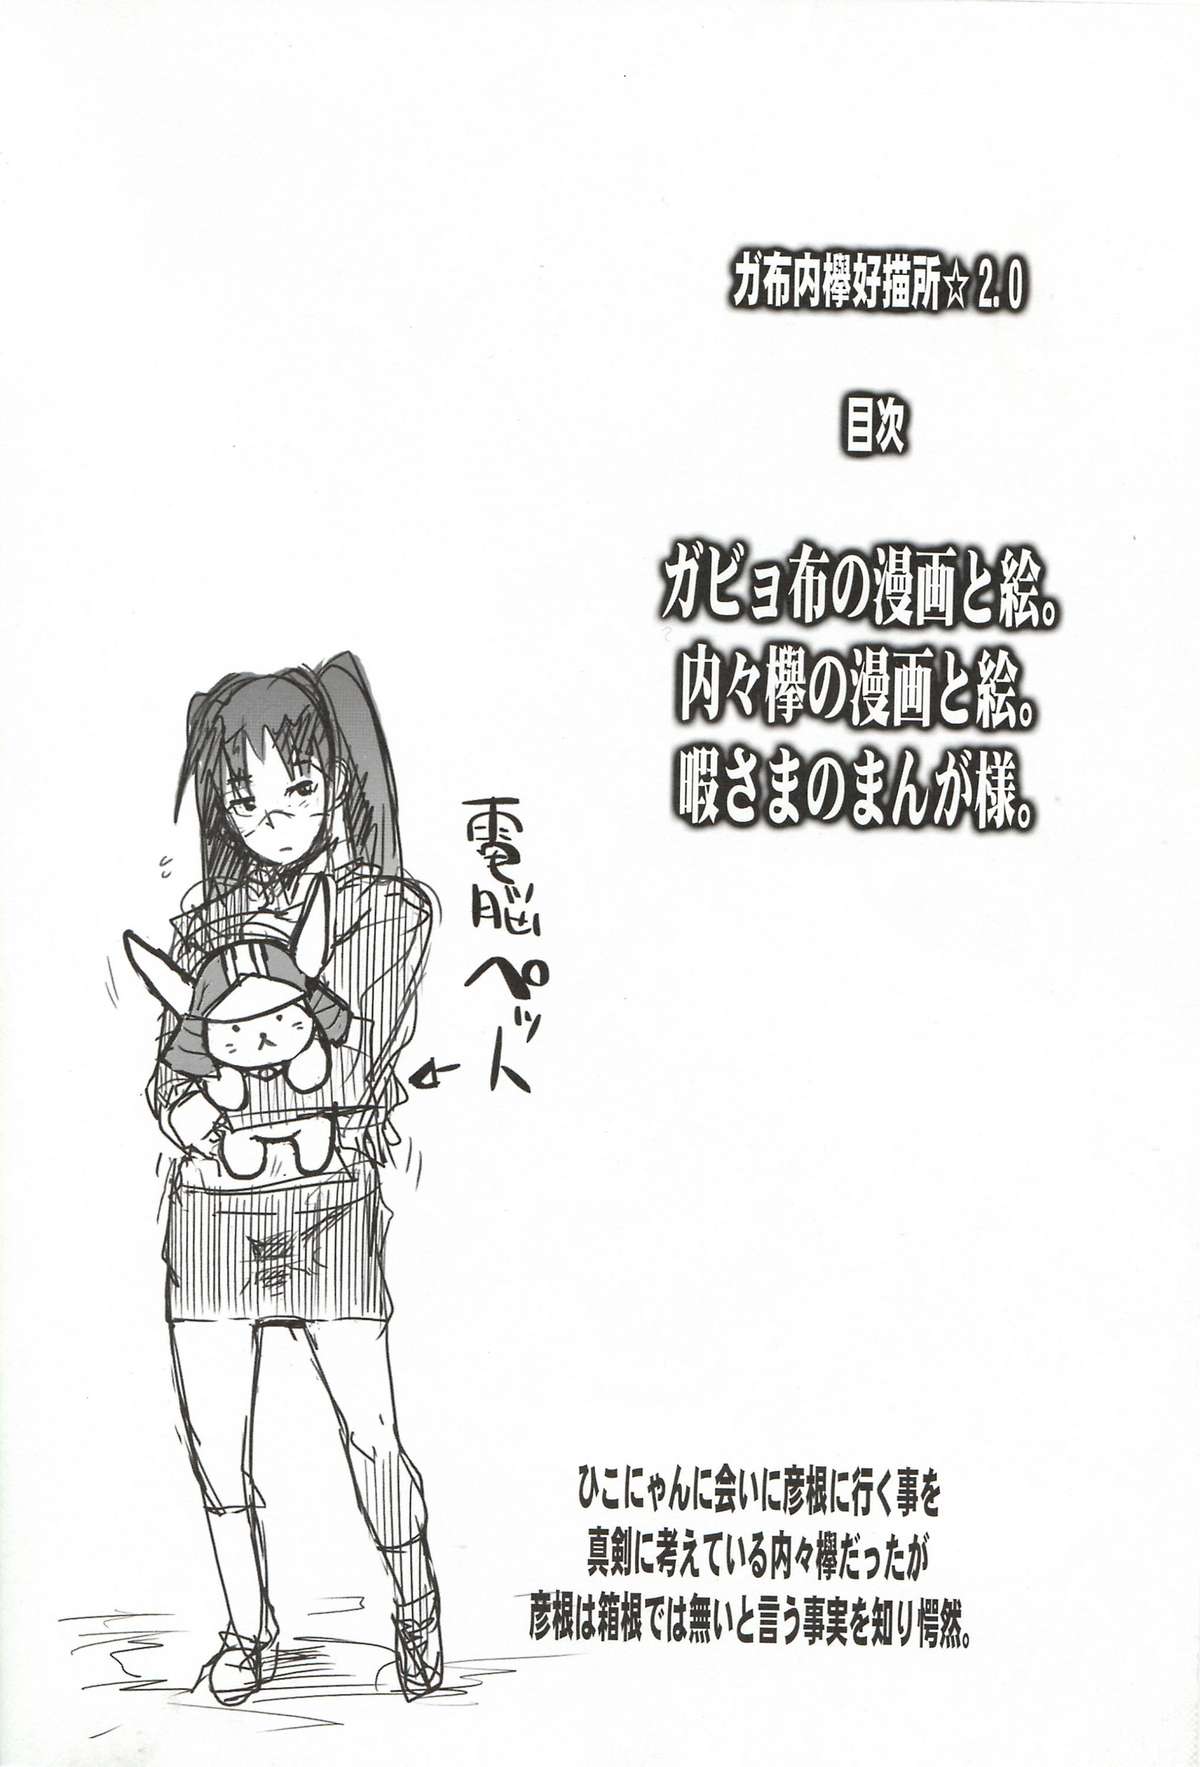 (C72) (ブロンコ一人旅, スミカラスミマデ) 内々欅とガビョ布の好きな物を描きたいところだけ☆2.0 (various)